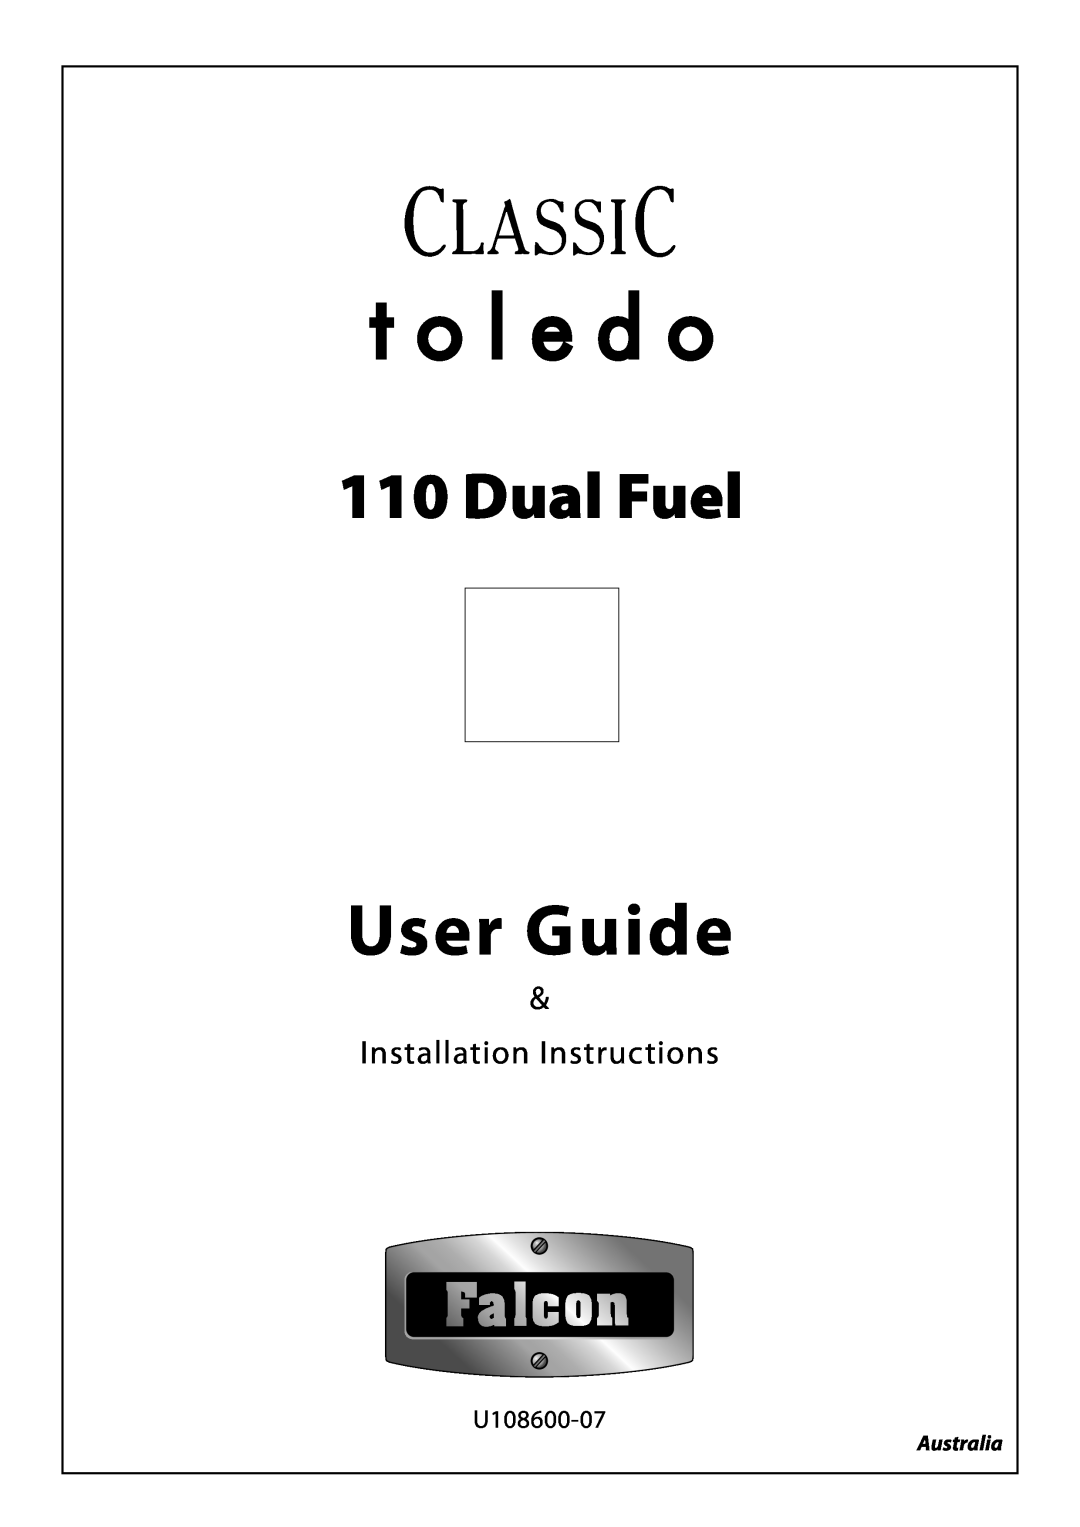 JVC toledo installation instructions User Guide, Dual Fuel, Installation Instructions, U108600-07, Australia 